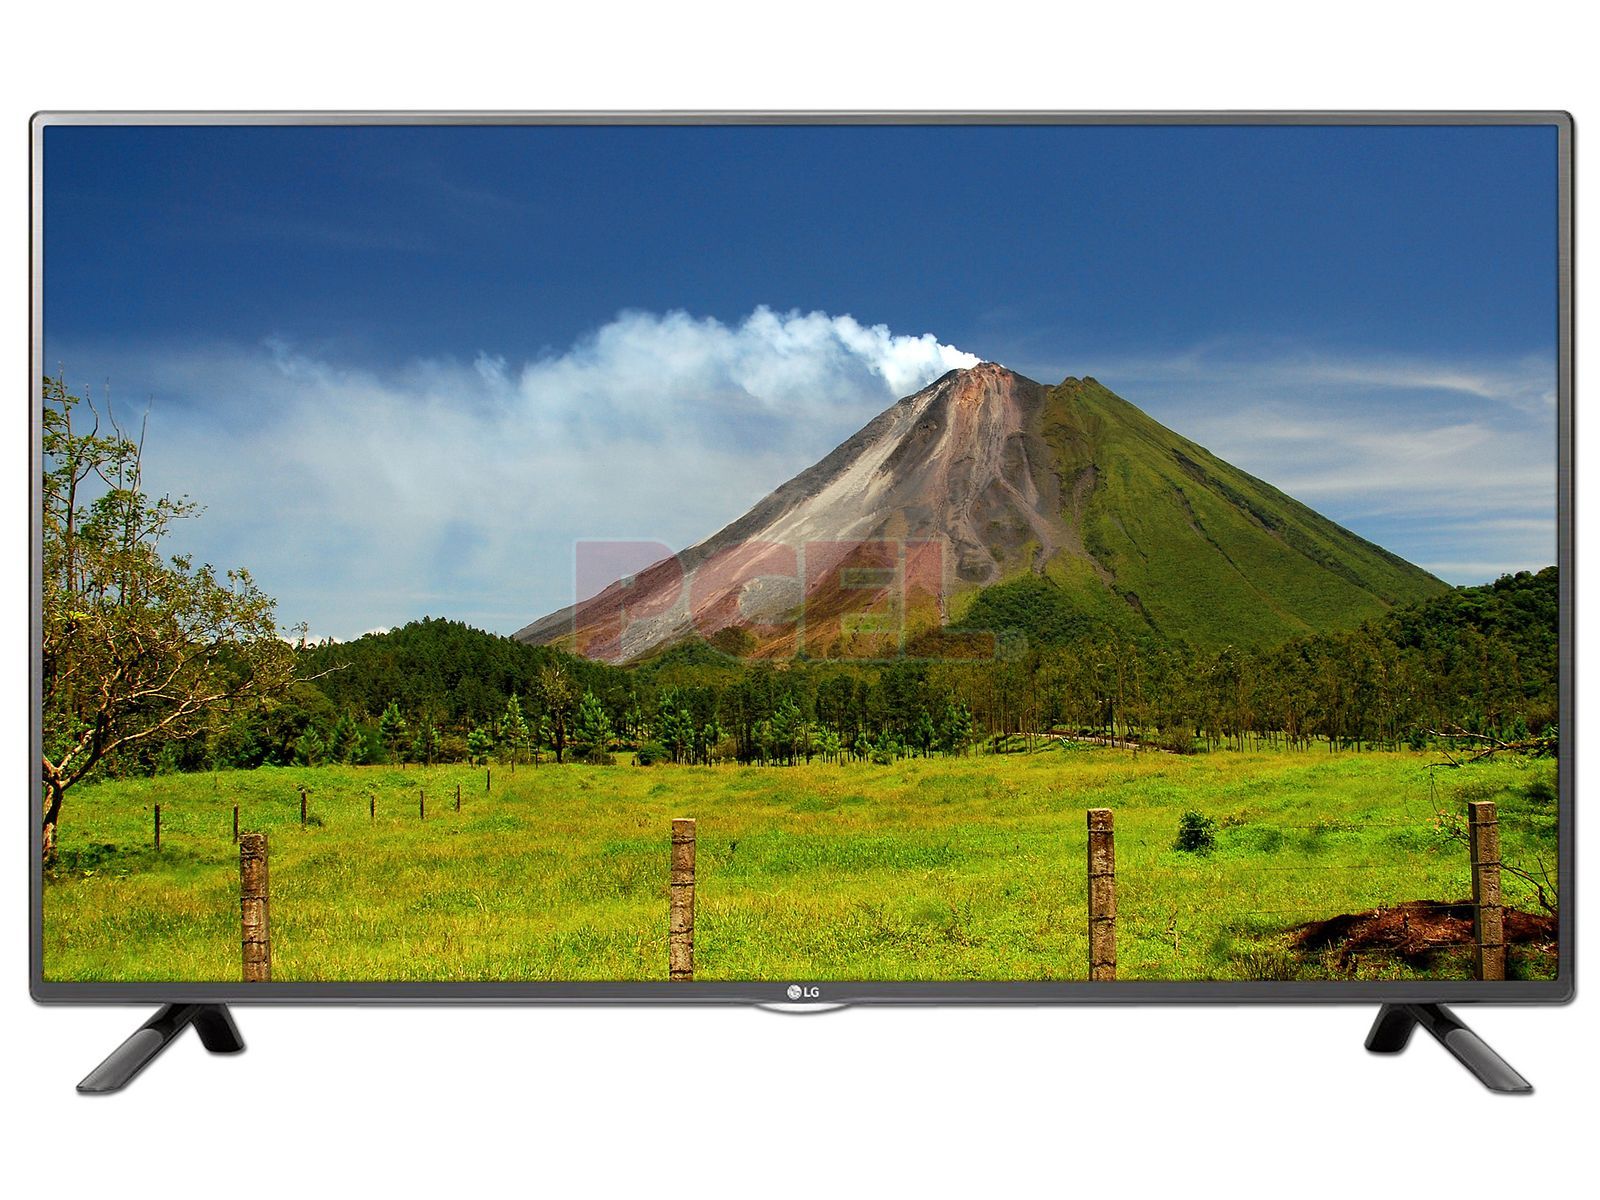 LG 50LH5730: 50-inch Full HD Smart LED TV